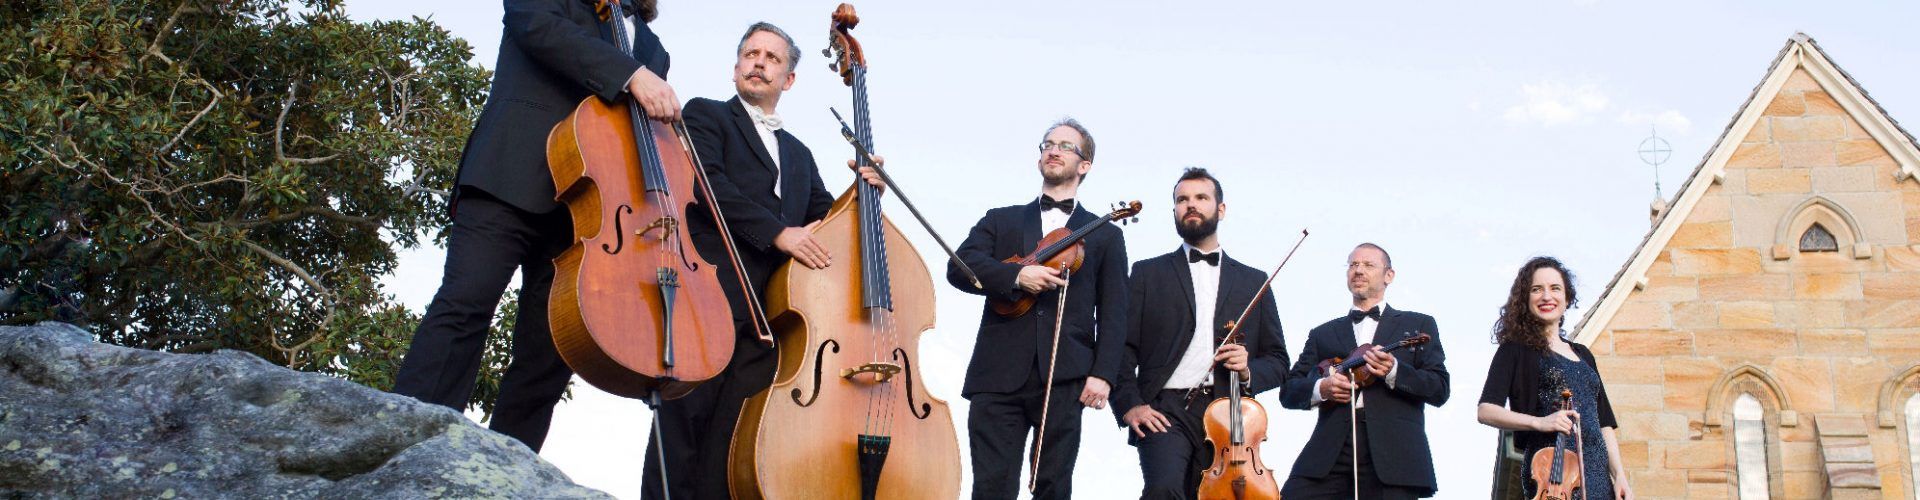 La Orquesta de Cámara Filarmonía de Colonia de nuevo en Vinaròs